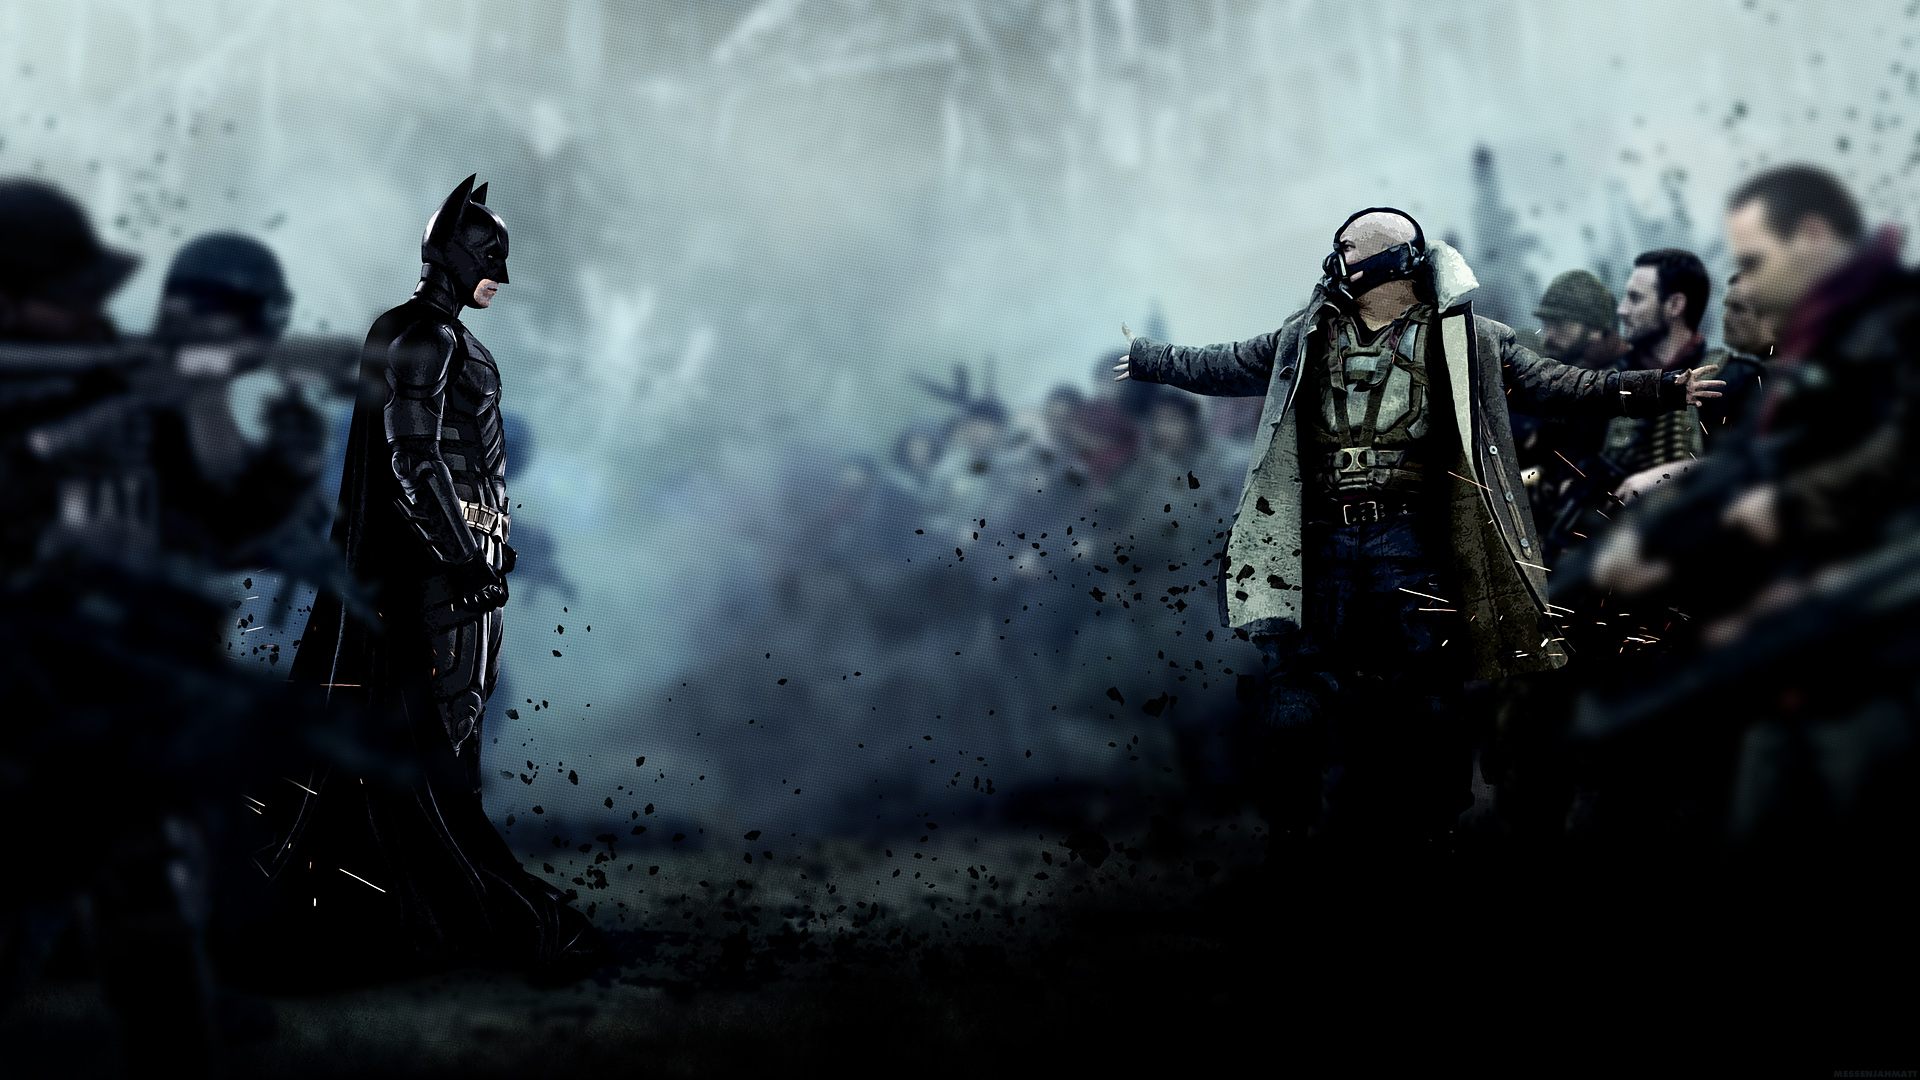 Batman The Dark Knight Rises HD Wallpaper 3d